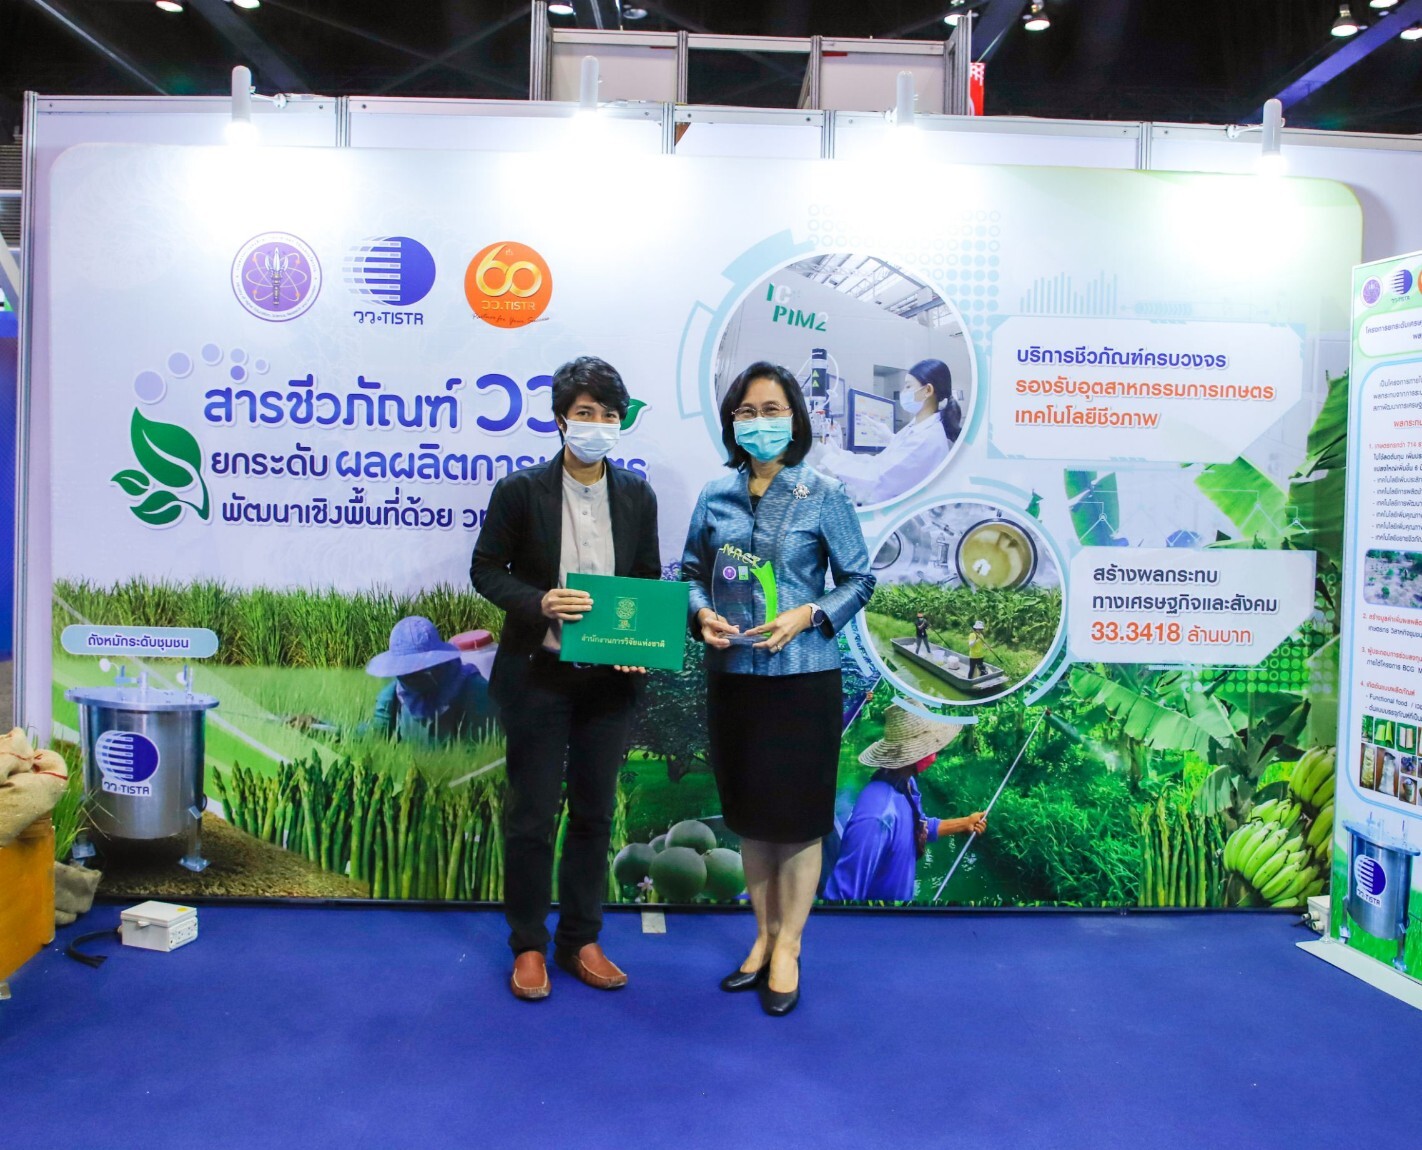 วว. คว้ารางวัล Thailand  Research  Expo  Award  2022 จากการนำเสนอผลงาน "สารชีวภัณฑ์ วว. ยกระดับผลผลิตการเกษตร พัฒนาเชิงพื้นที่ด้วย วทน."